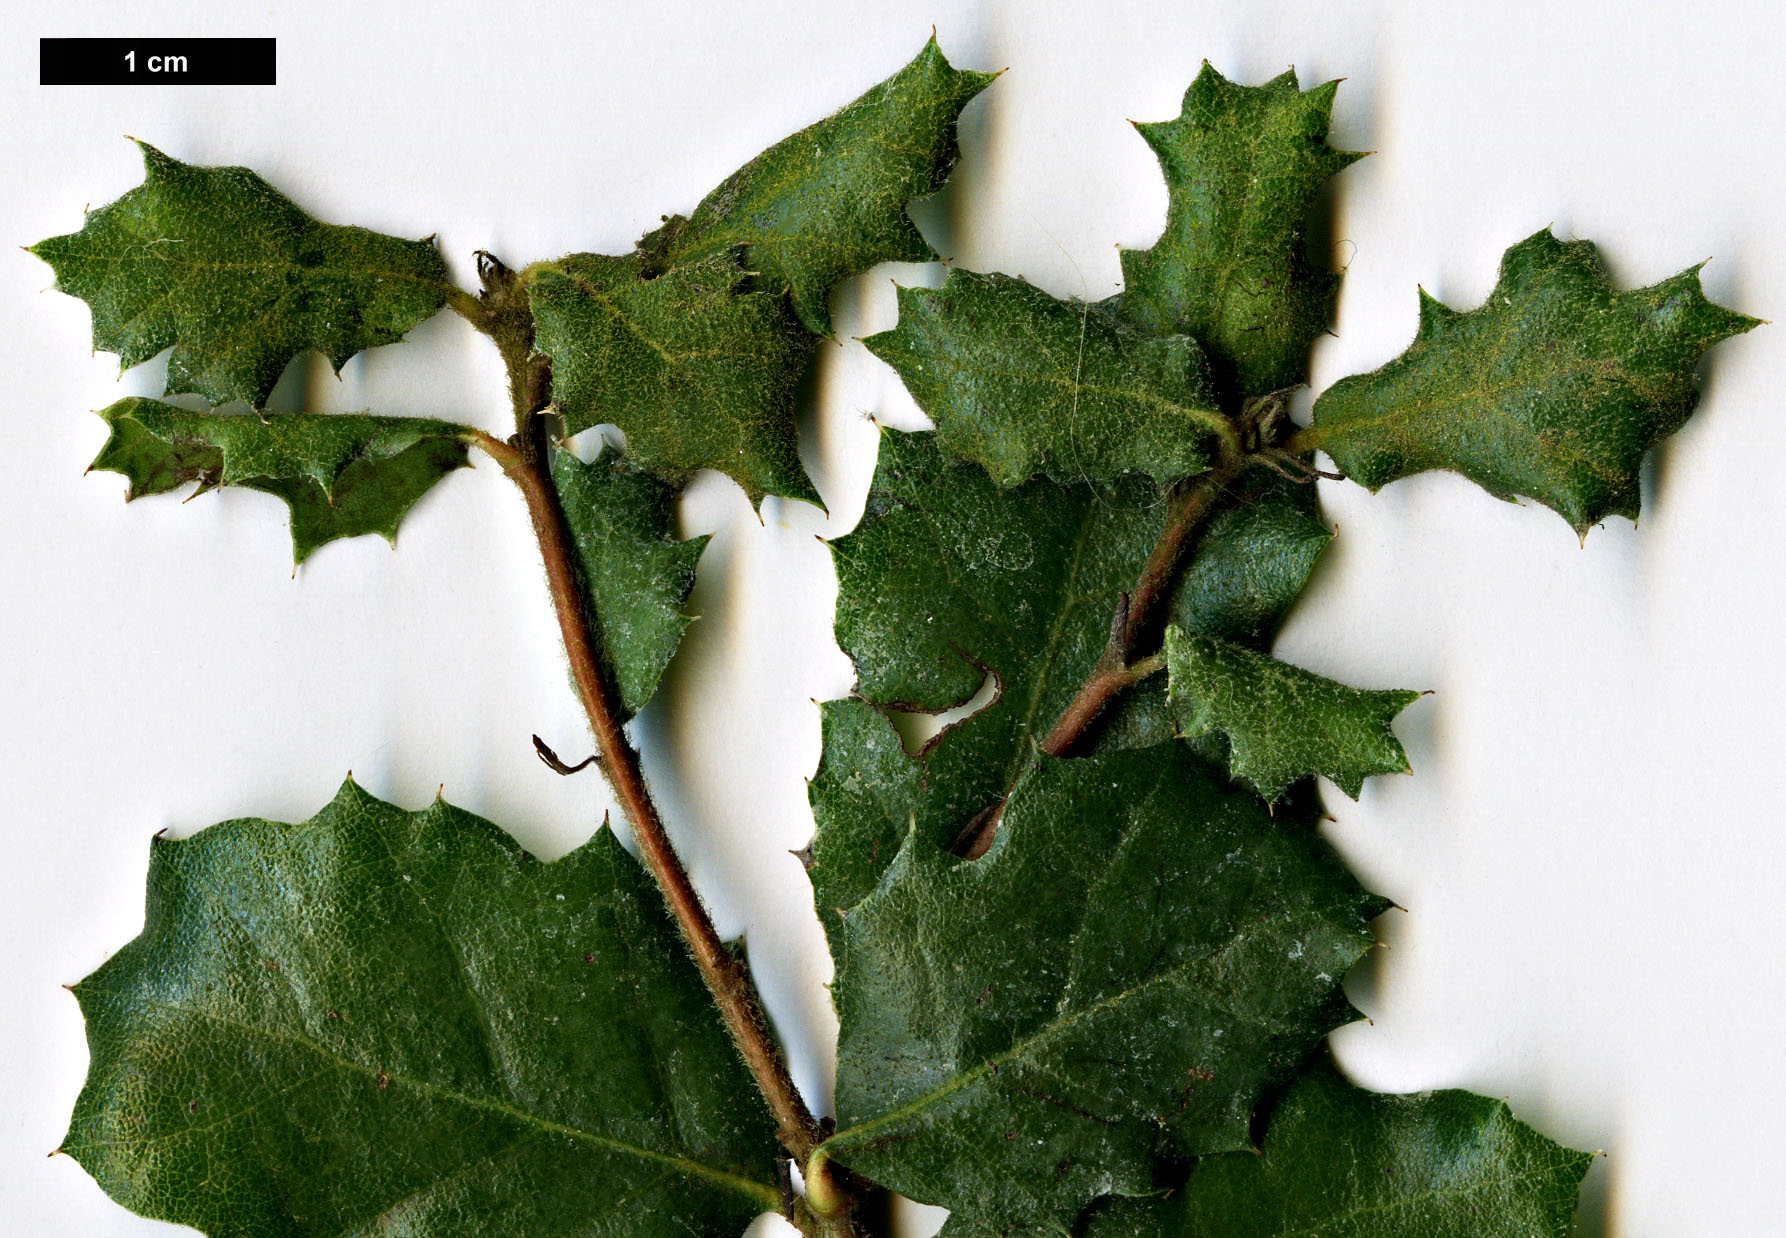 High resolution image: Family: Fagaceae - Genus: Quercus - Taxon: durata 